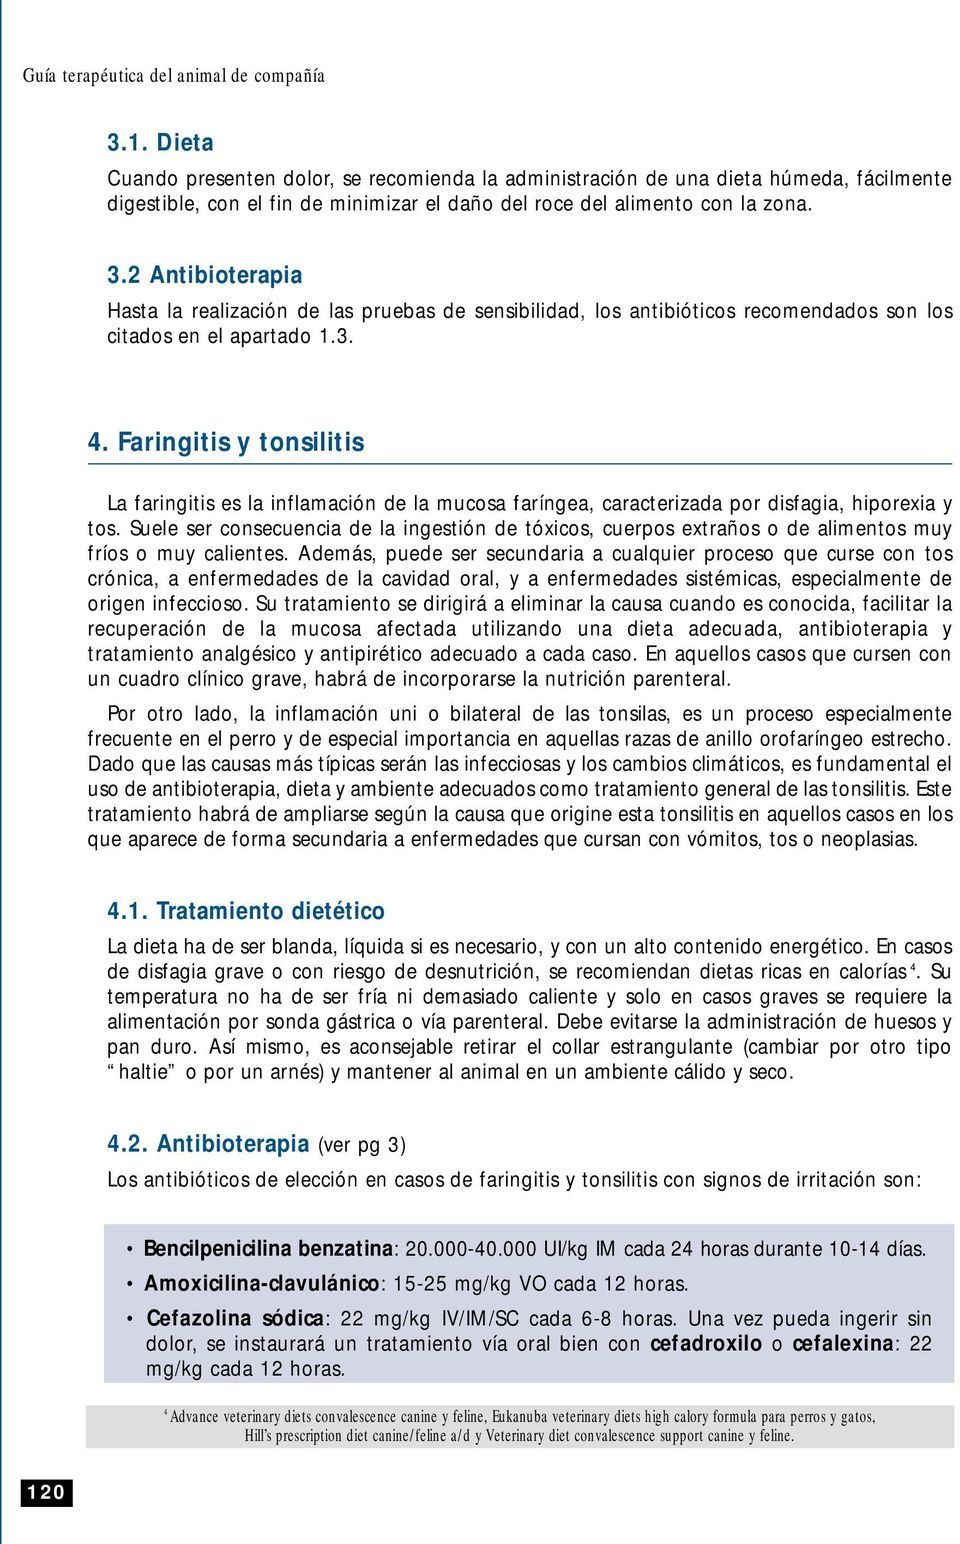 2 Antibioterapia Hasta la realización de las pruebas de sensibilidad, los antibióticos recomendados son los citados en el apartado 1.3. 4.